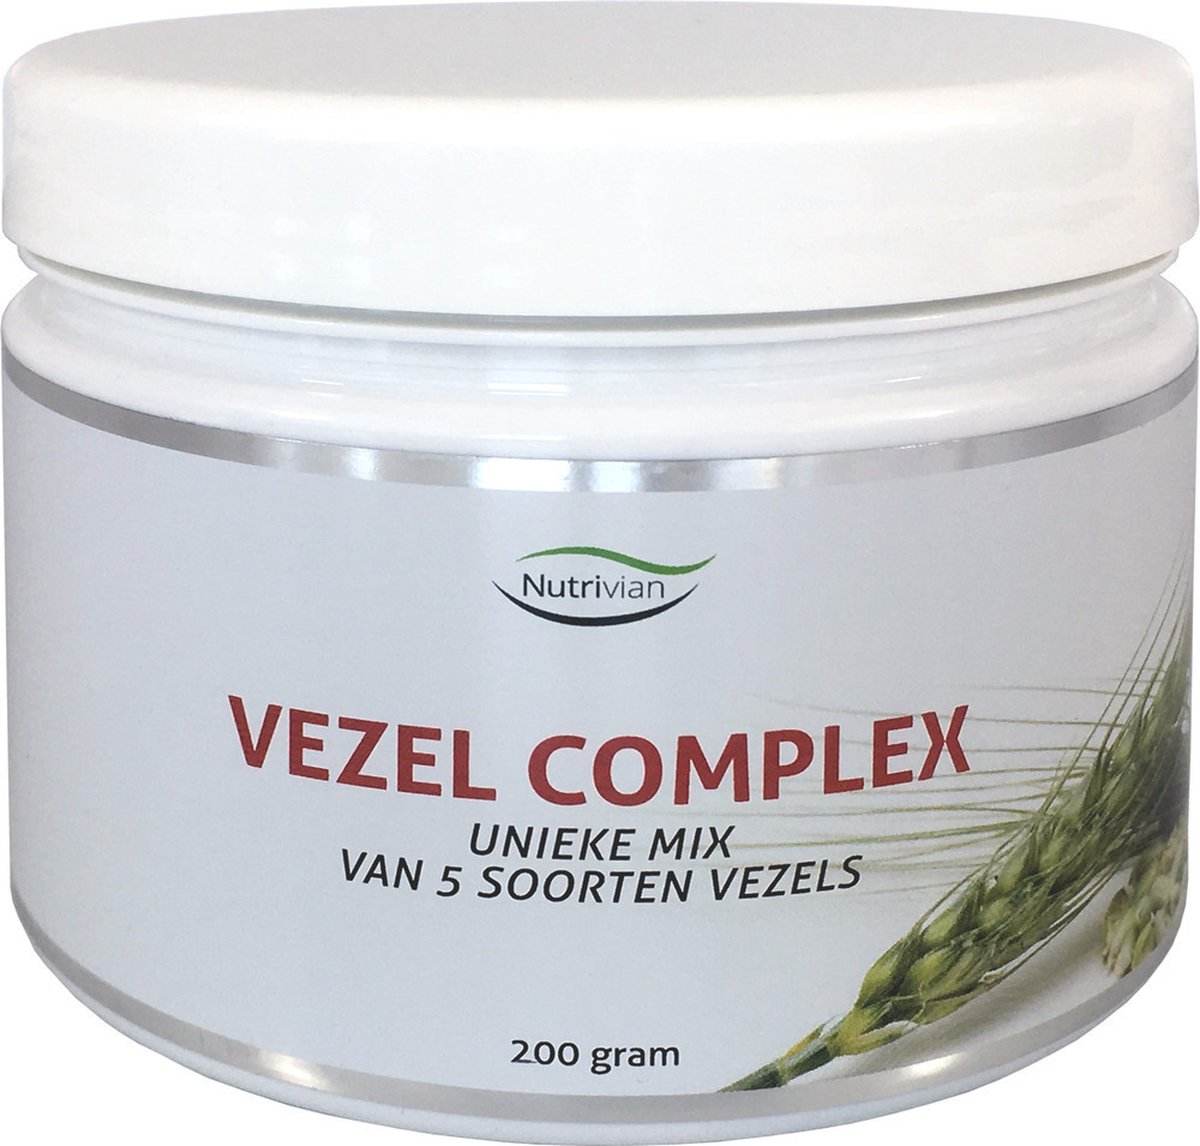 Vezel Complex - 200 gram